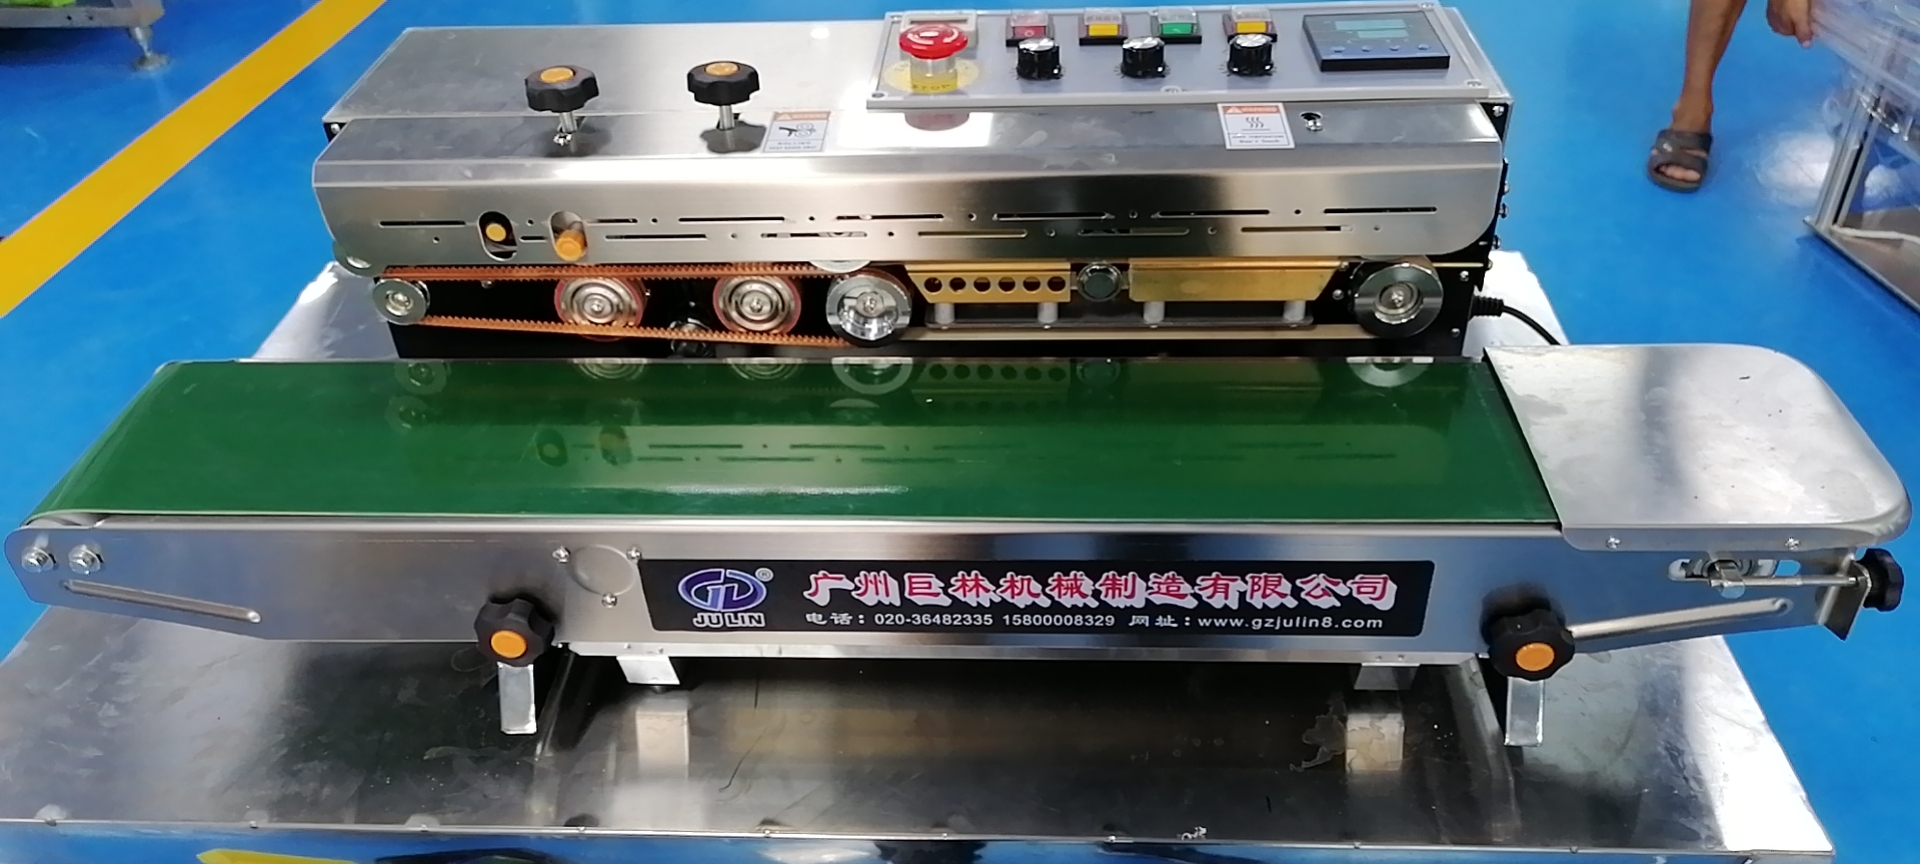 TRD-1000不銹鋼自動薄膜油墨打碼封口機